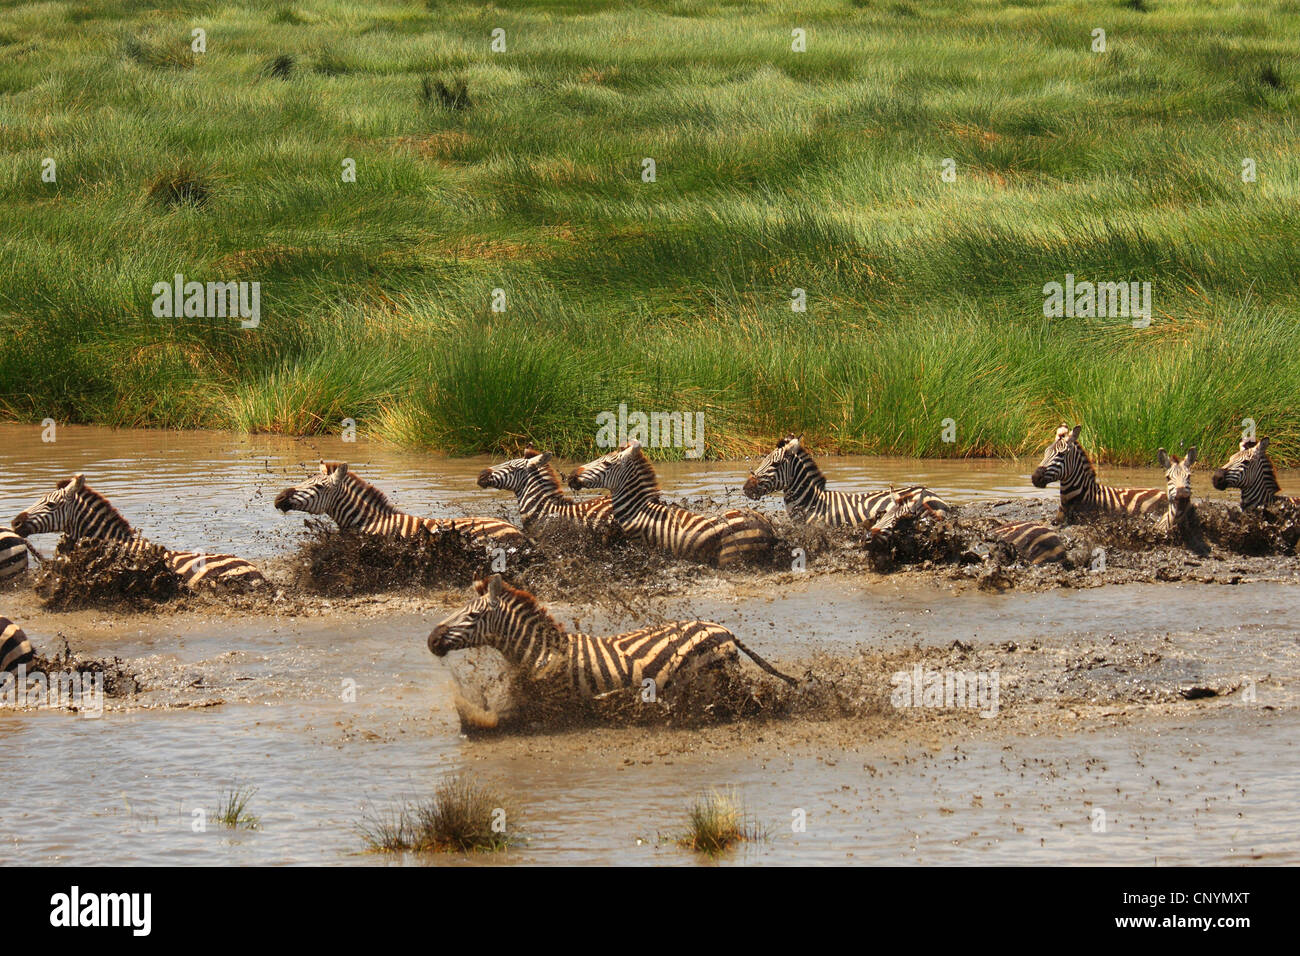 Le zèbre de Boehm, Grant's zebra (Equus quagga boehmi Equus quagga, granti), Troupeau de zèbres qui fuient dans un étang, la Tanzanie, la Ngorongoro Conservation Area Banque D'Images